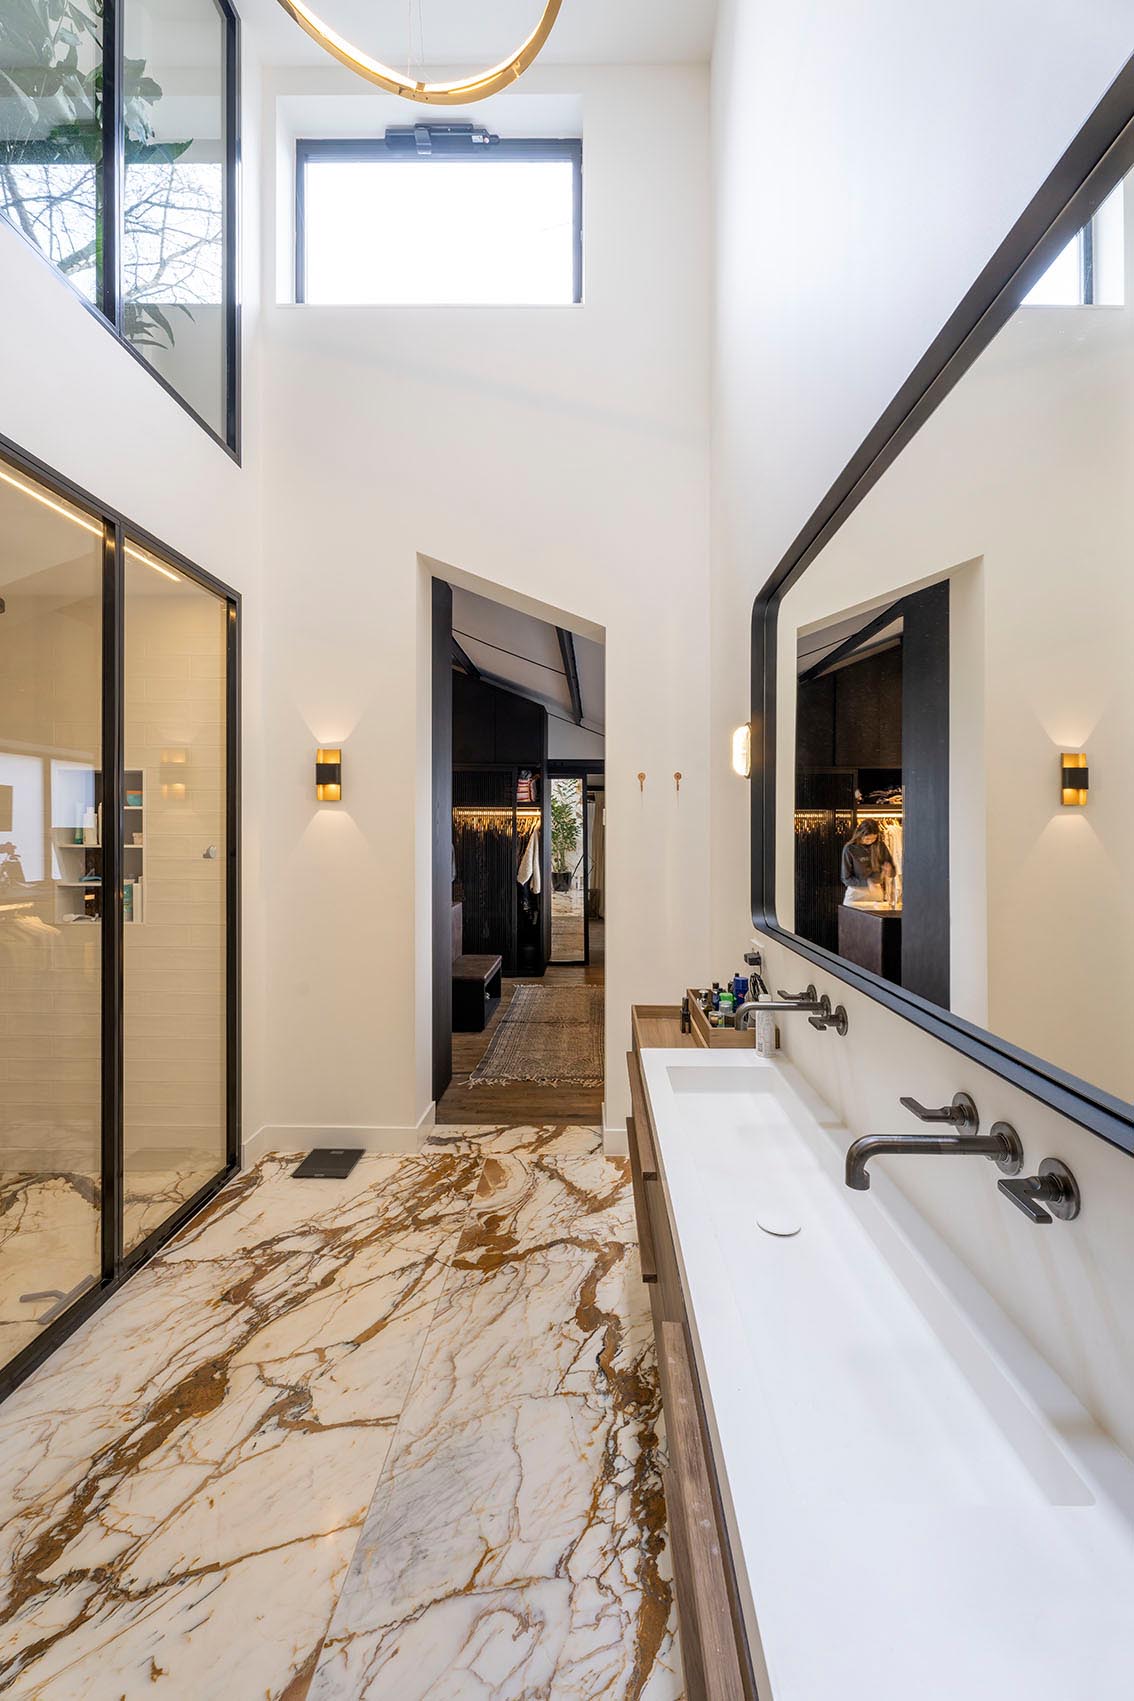 Современная ванная комната со стеклянной душевой кабиной и длинным тонким туалетным столиком с раковиной.